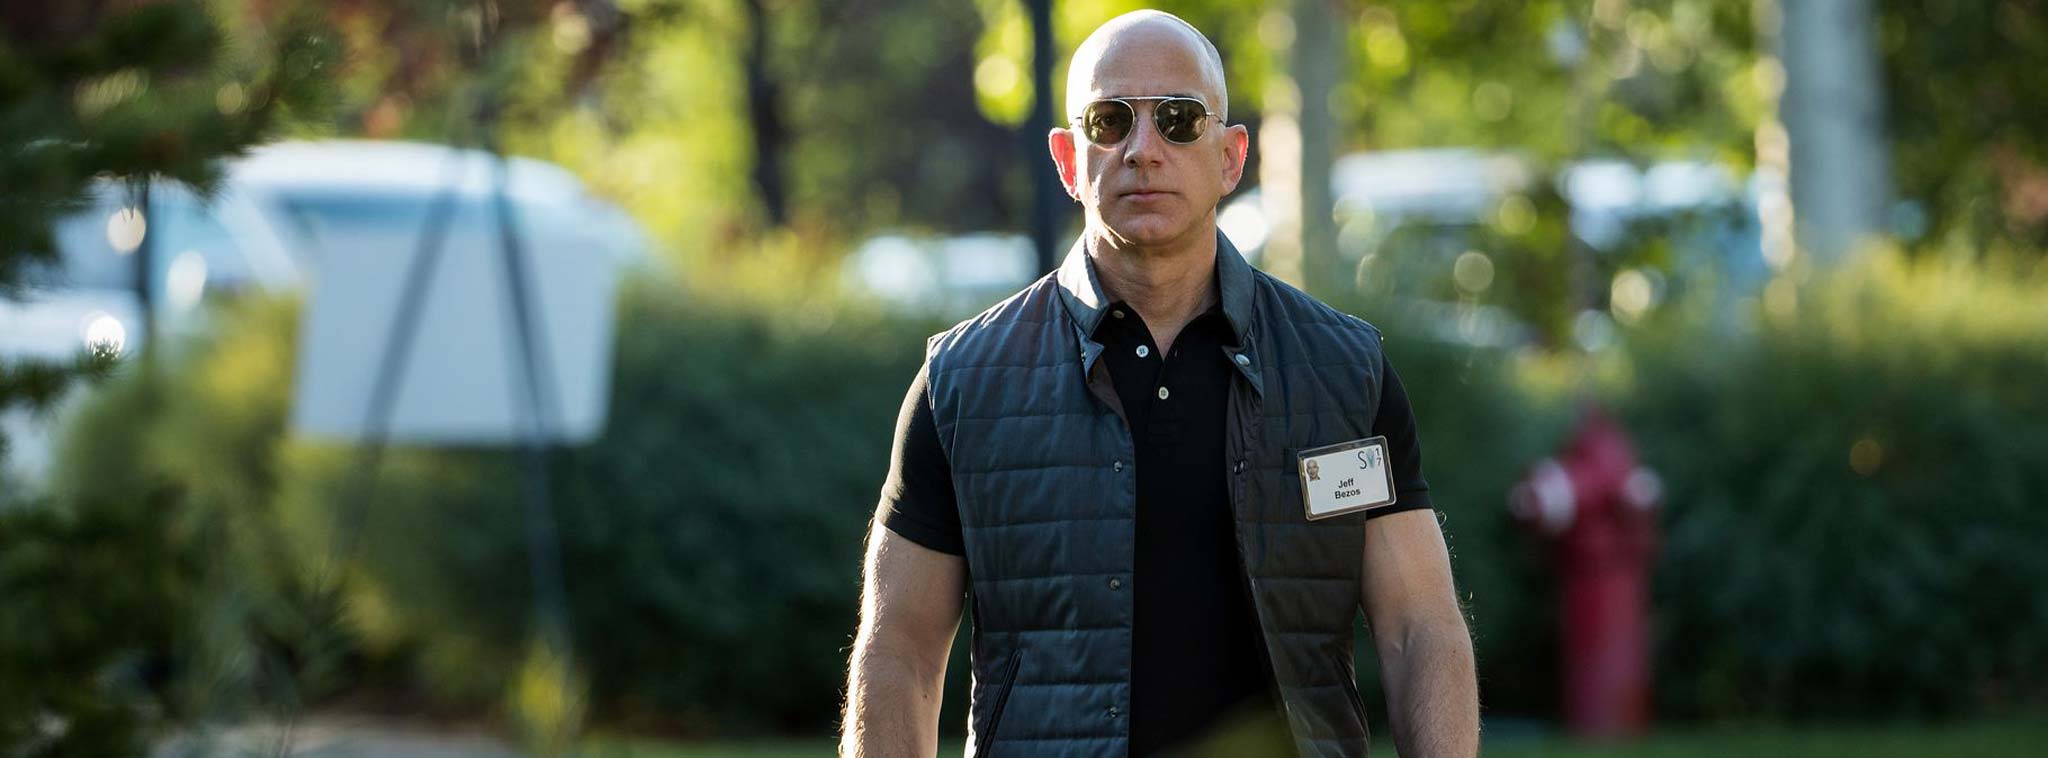 Tài sản ròng của Jeff Bezos vượt 100 tỷ đô nhờ doanh số bán hàng khả quan từ Amazon dịp Black Friday